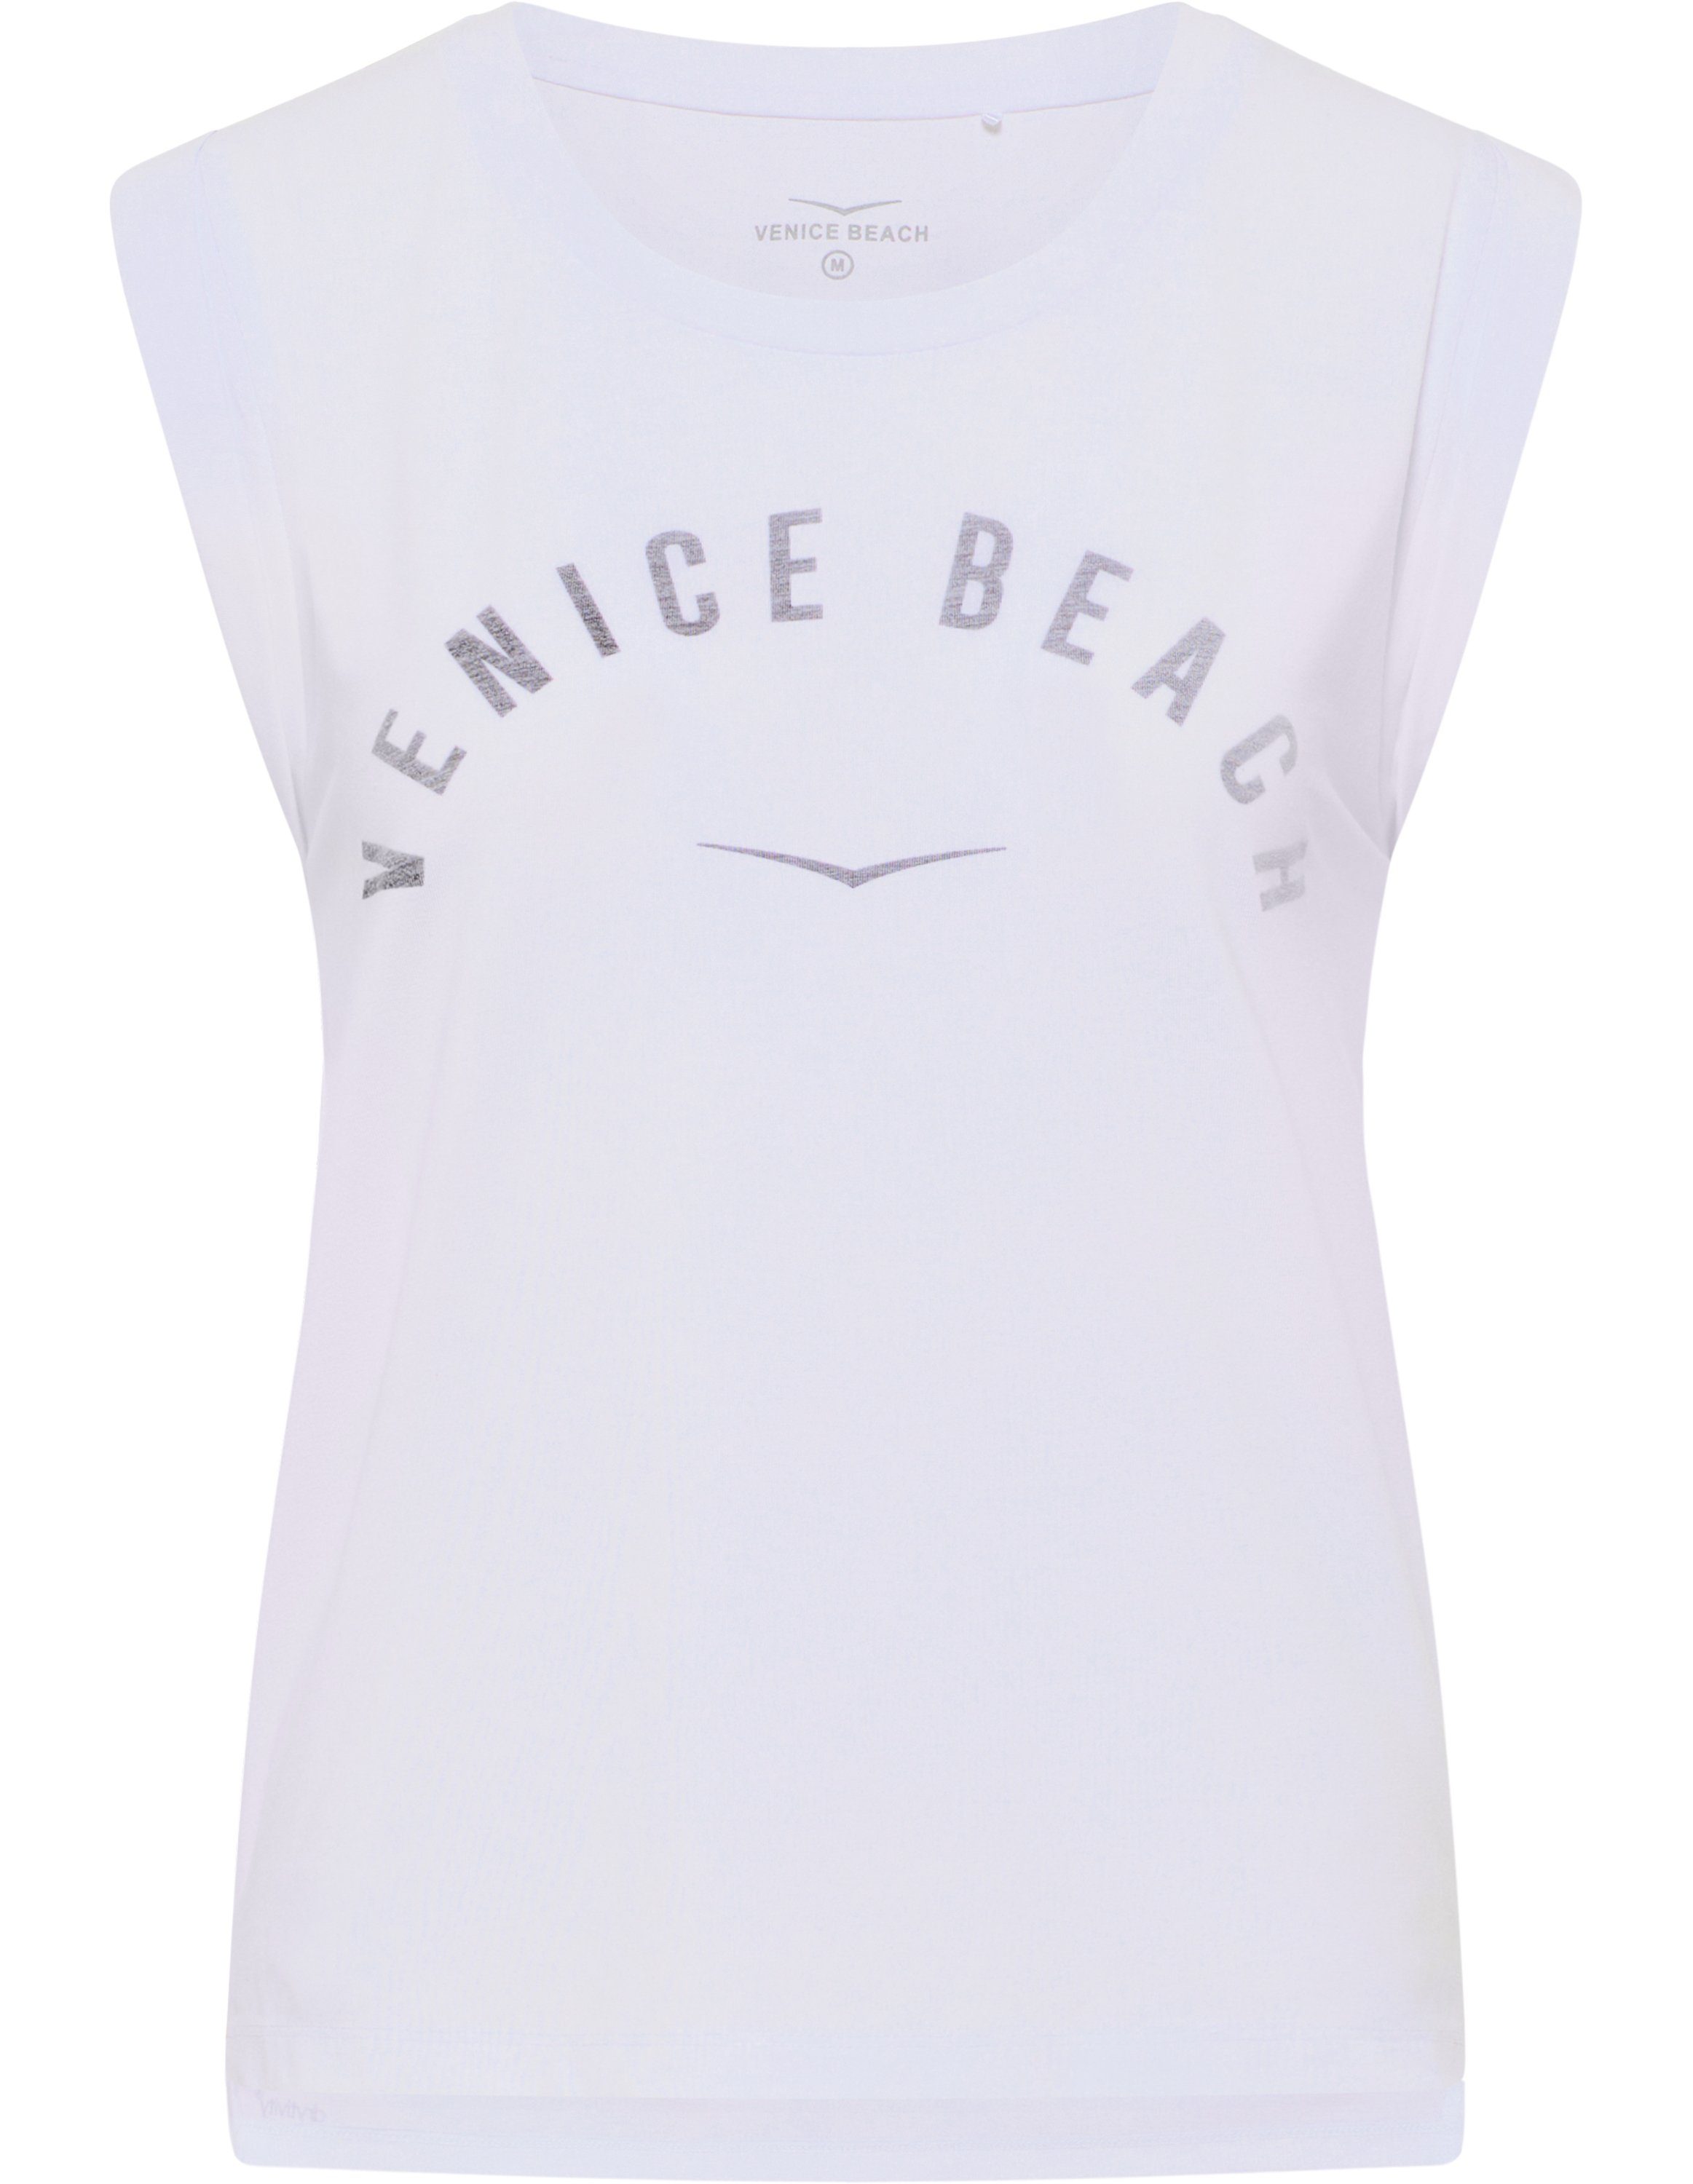 Beach VB Chayanne white Venice T-Shirt T-Shirt